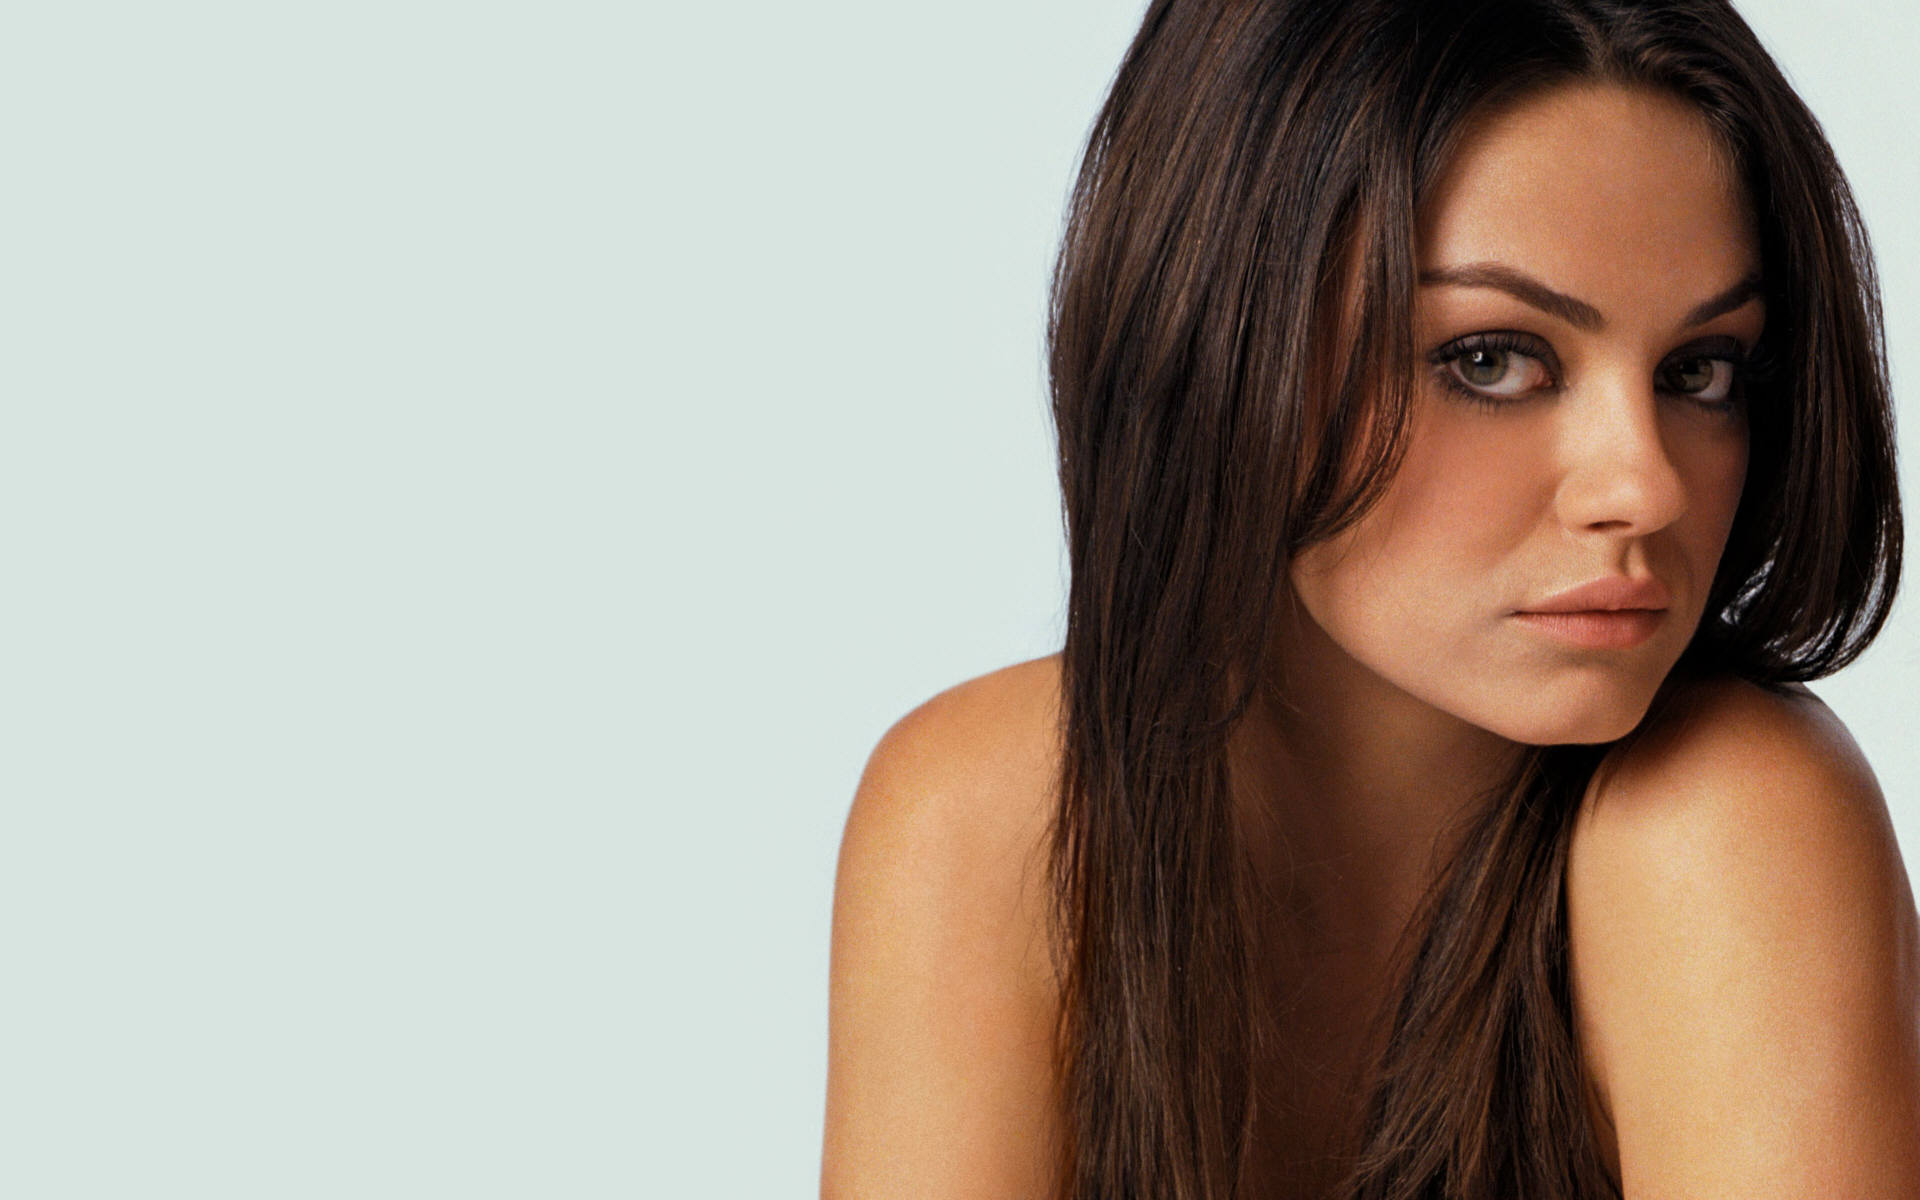 women, Mila Kunis, actress, white background - desktop wallpaper